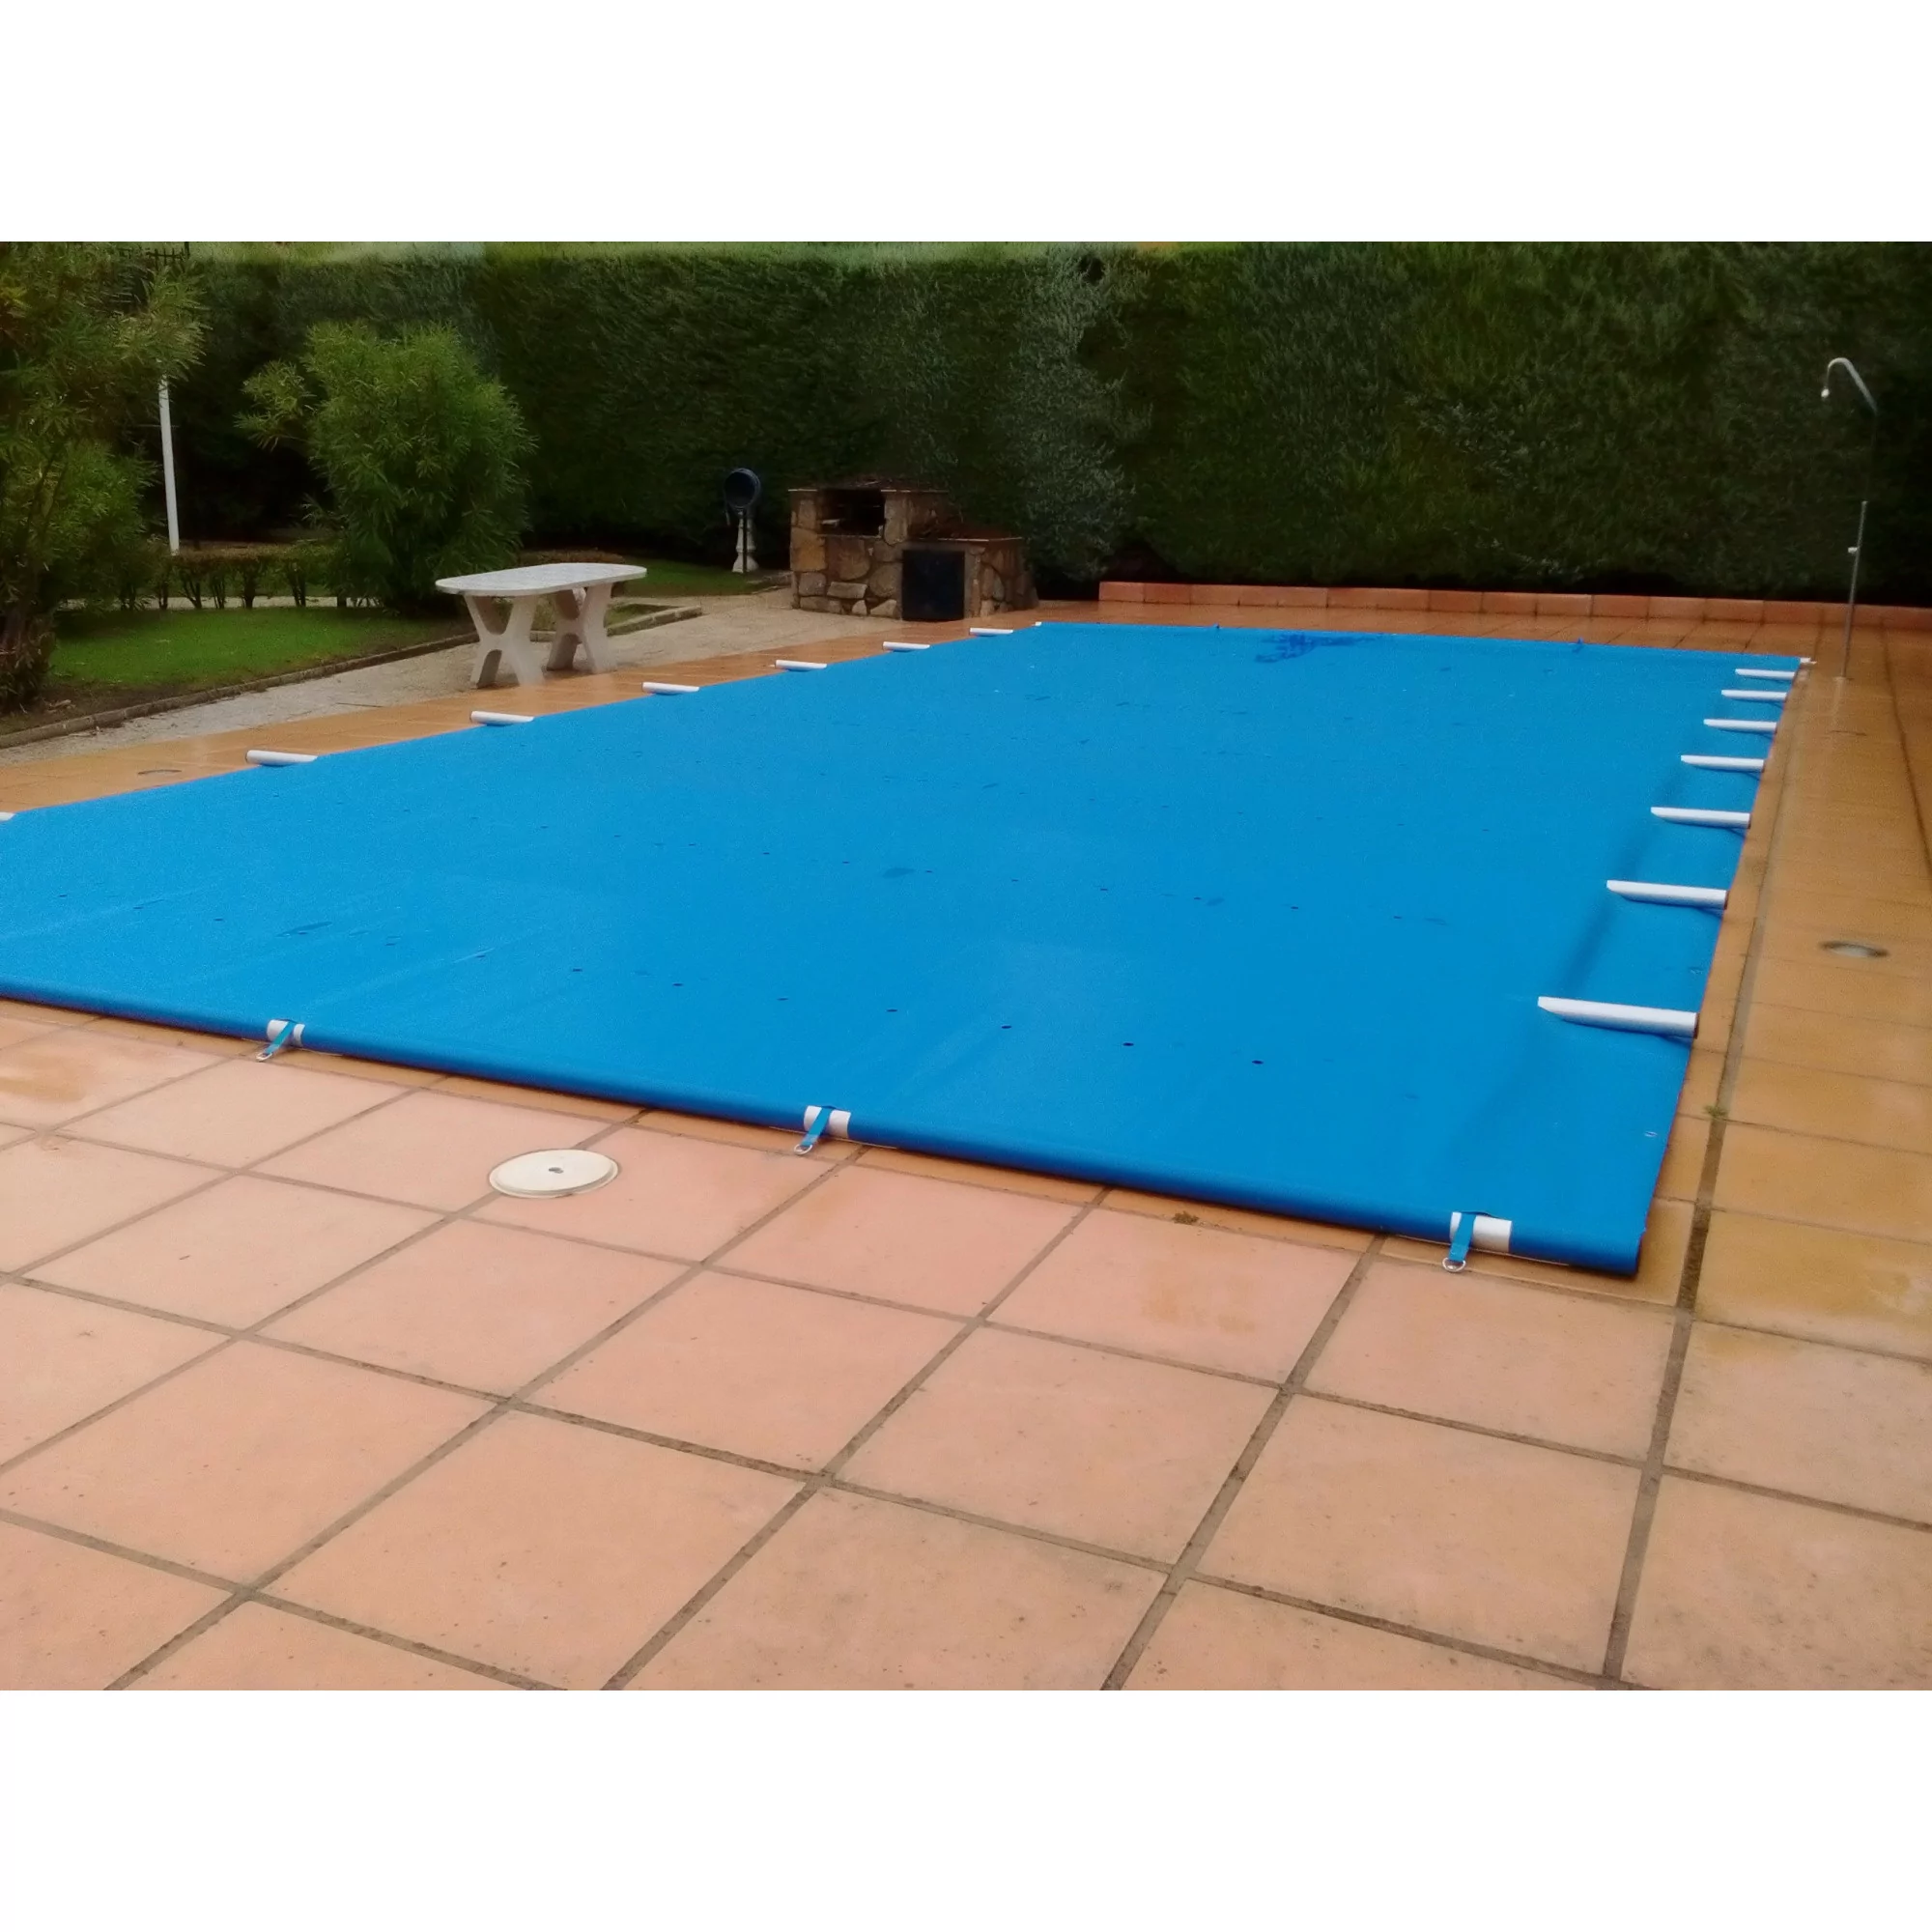 Cobertor de invierno Azul/Negra lona para piscina (6,30 x 3,30 m.)